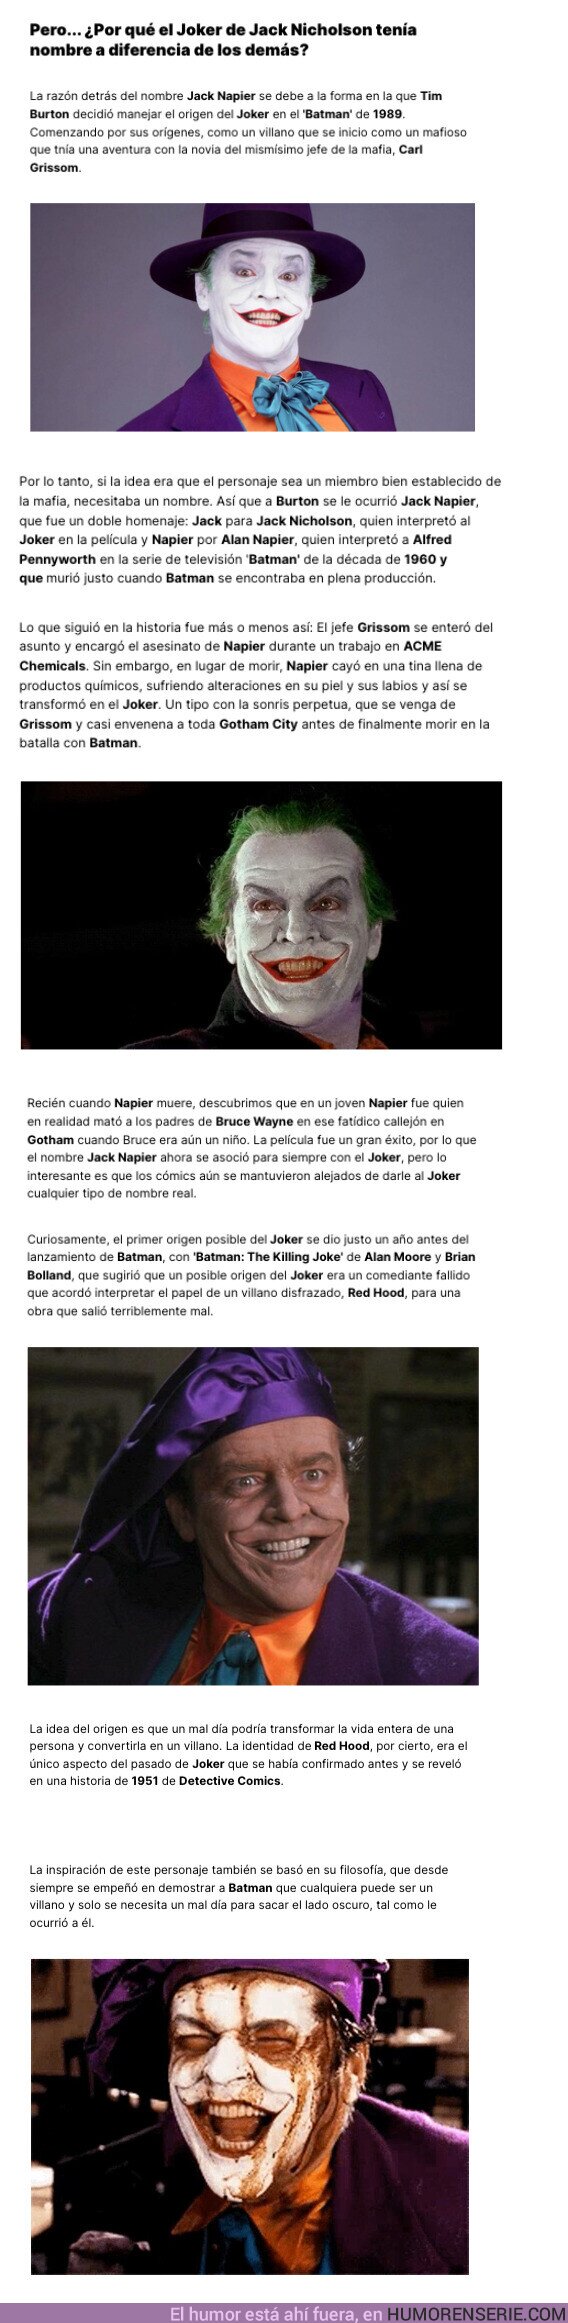 126224 - ¿Por qué el Joker de Jack Nicholson tenía nombre y los otros no?